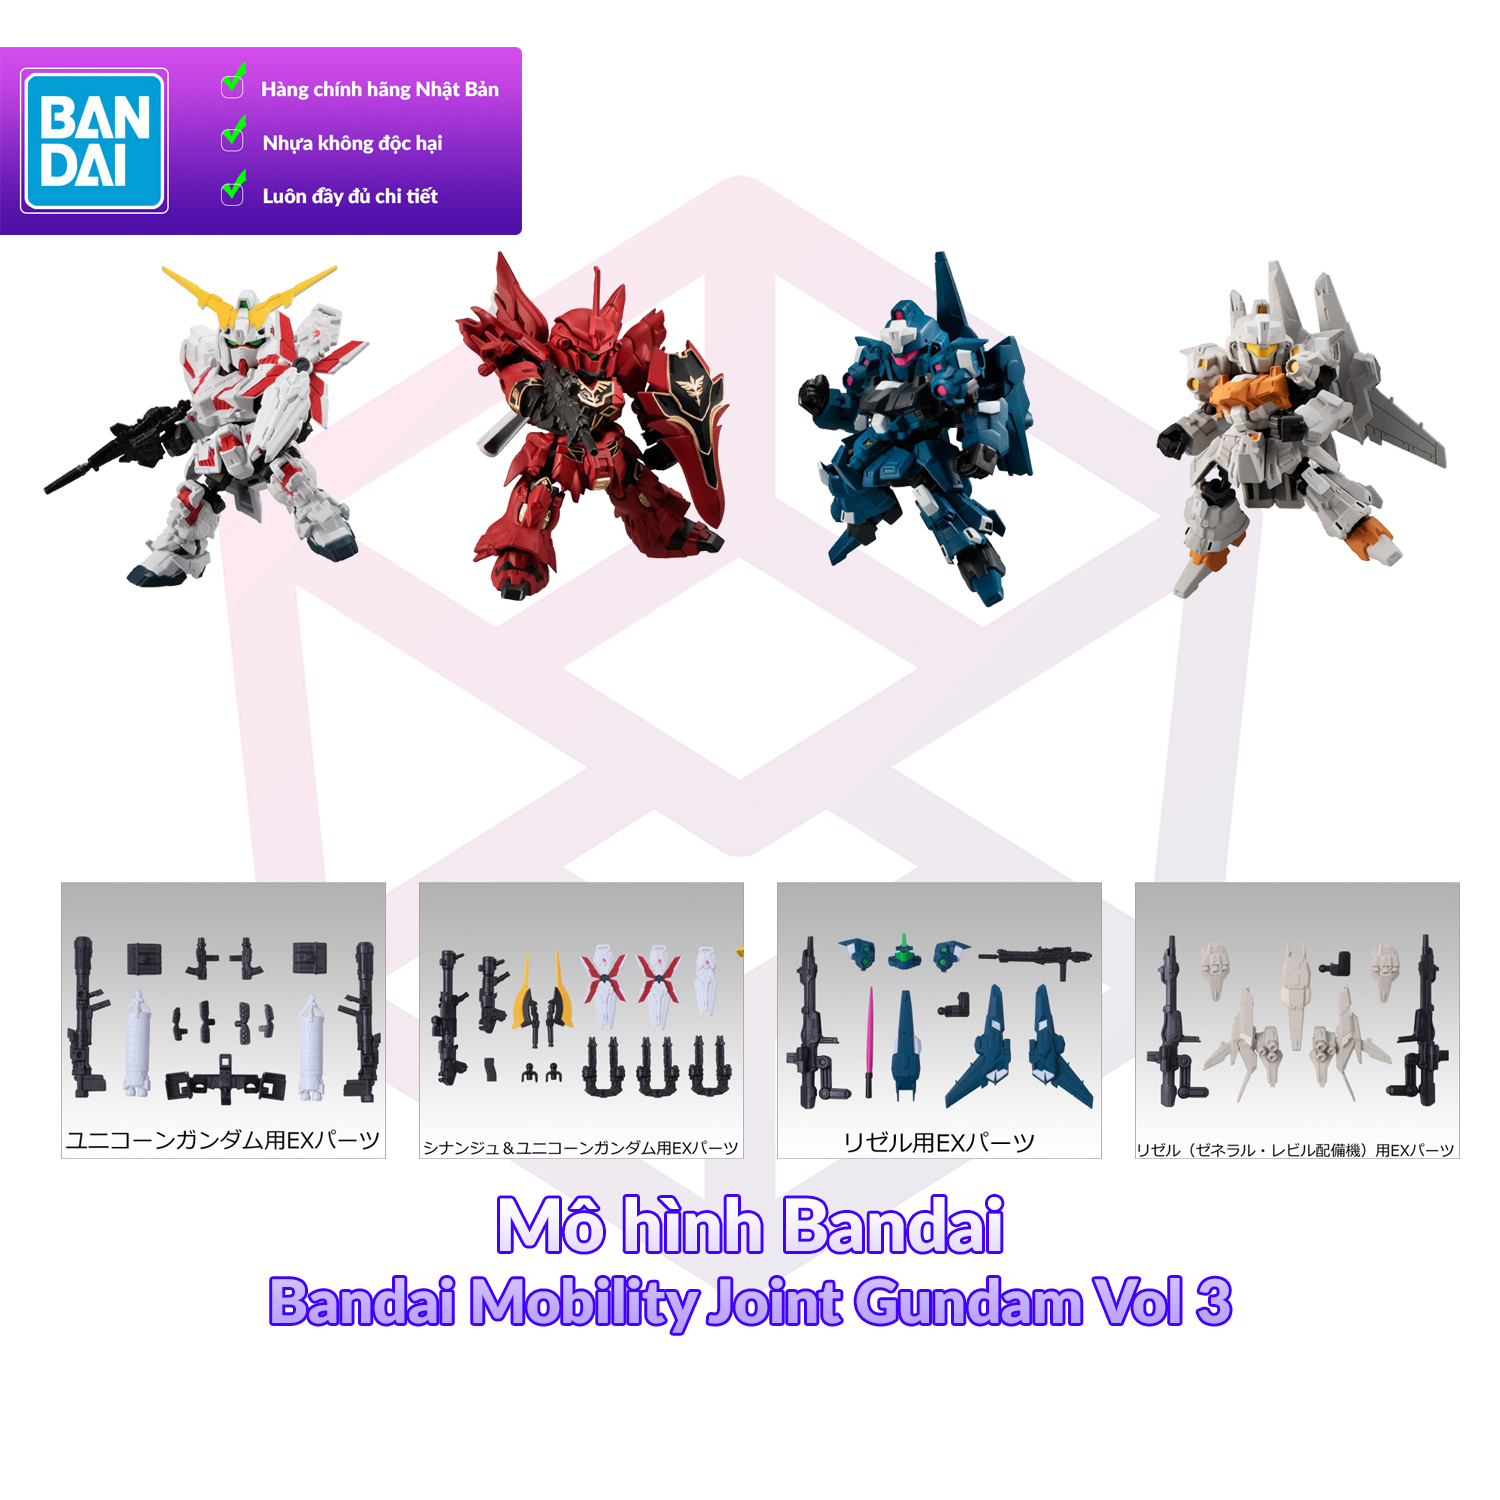 Mô hình Bandai Mobility Joint Gundam Vol 3 FCH